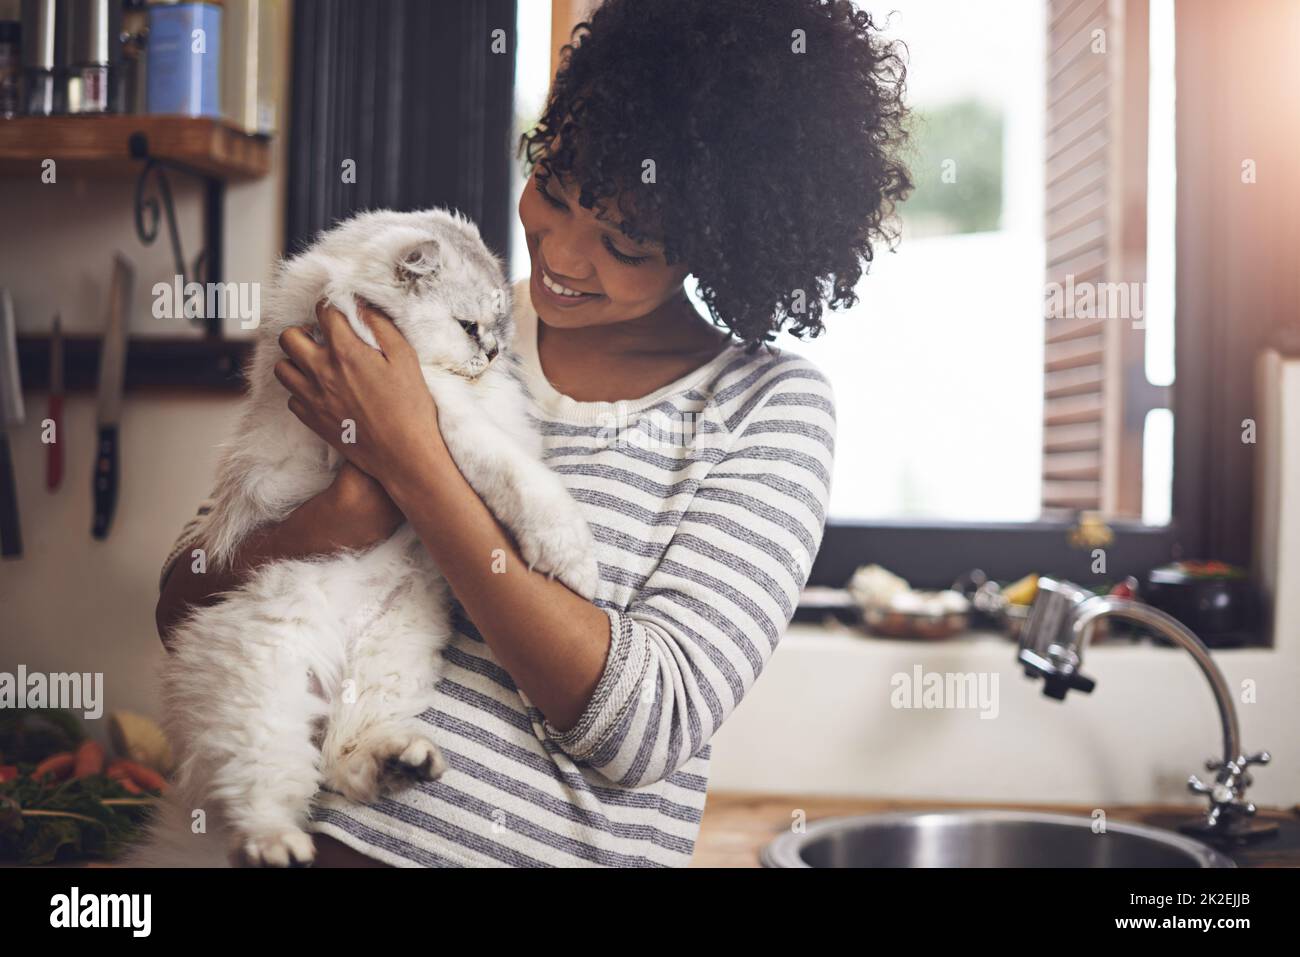 Ti arrenti il più bello. Scatto di una giovane donna che si gode una coccola con il suo gatto. Foto Stock